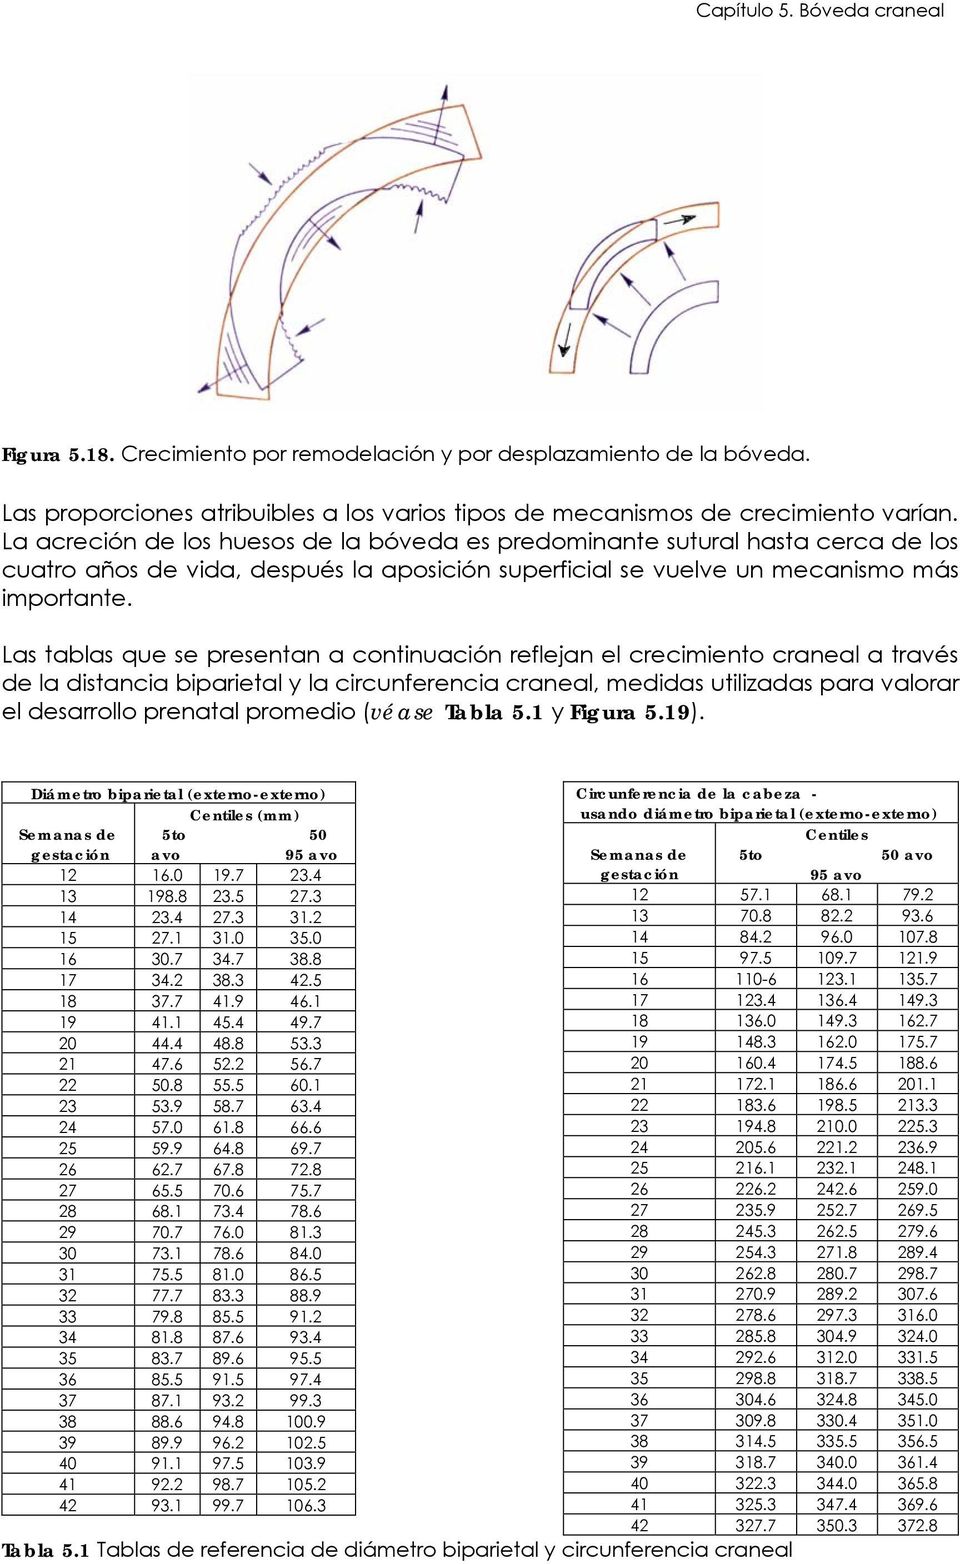 Las tablas que se presentan a continuación reflejan el crecimiento craneal a través de la distancia biparietal y la circunferencia craneal, medidas utilizadas para valorar el desarrollo prenatal